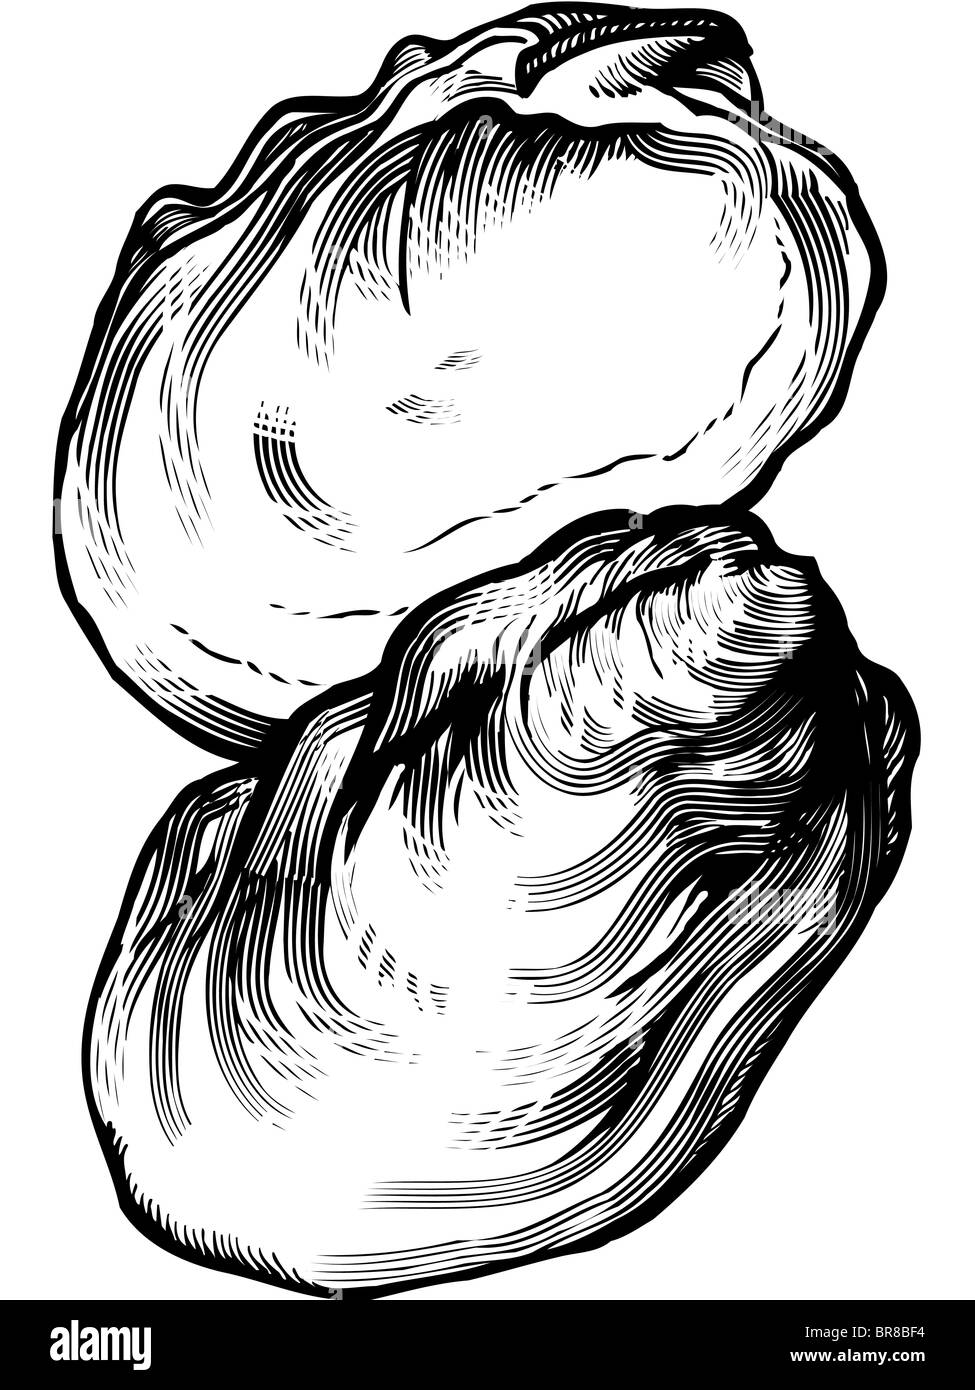 Un dessin en noir et blanc d'une huître Banque D'Images